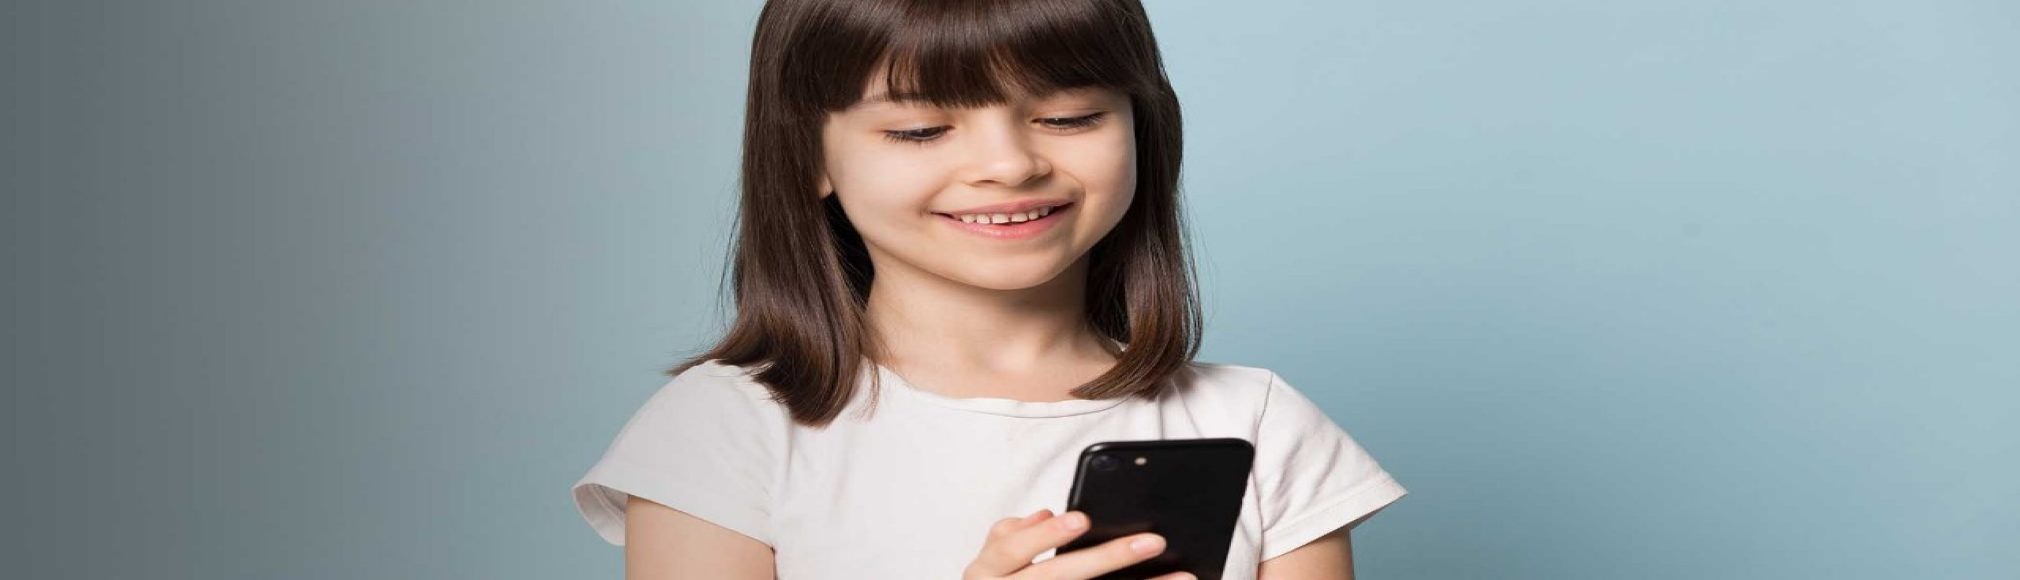 blog-hero-buying-childs-first-phone-2020x808